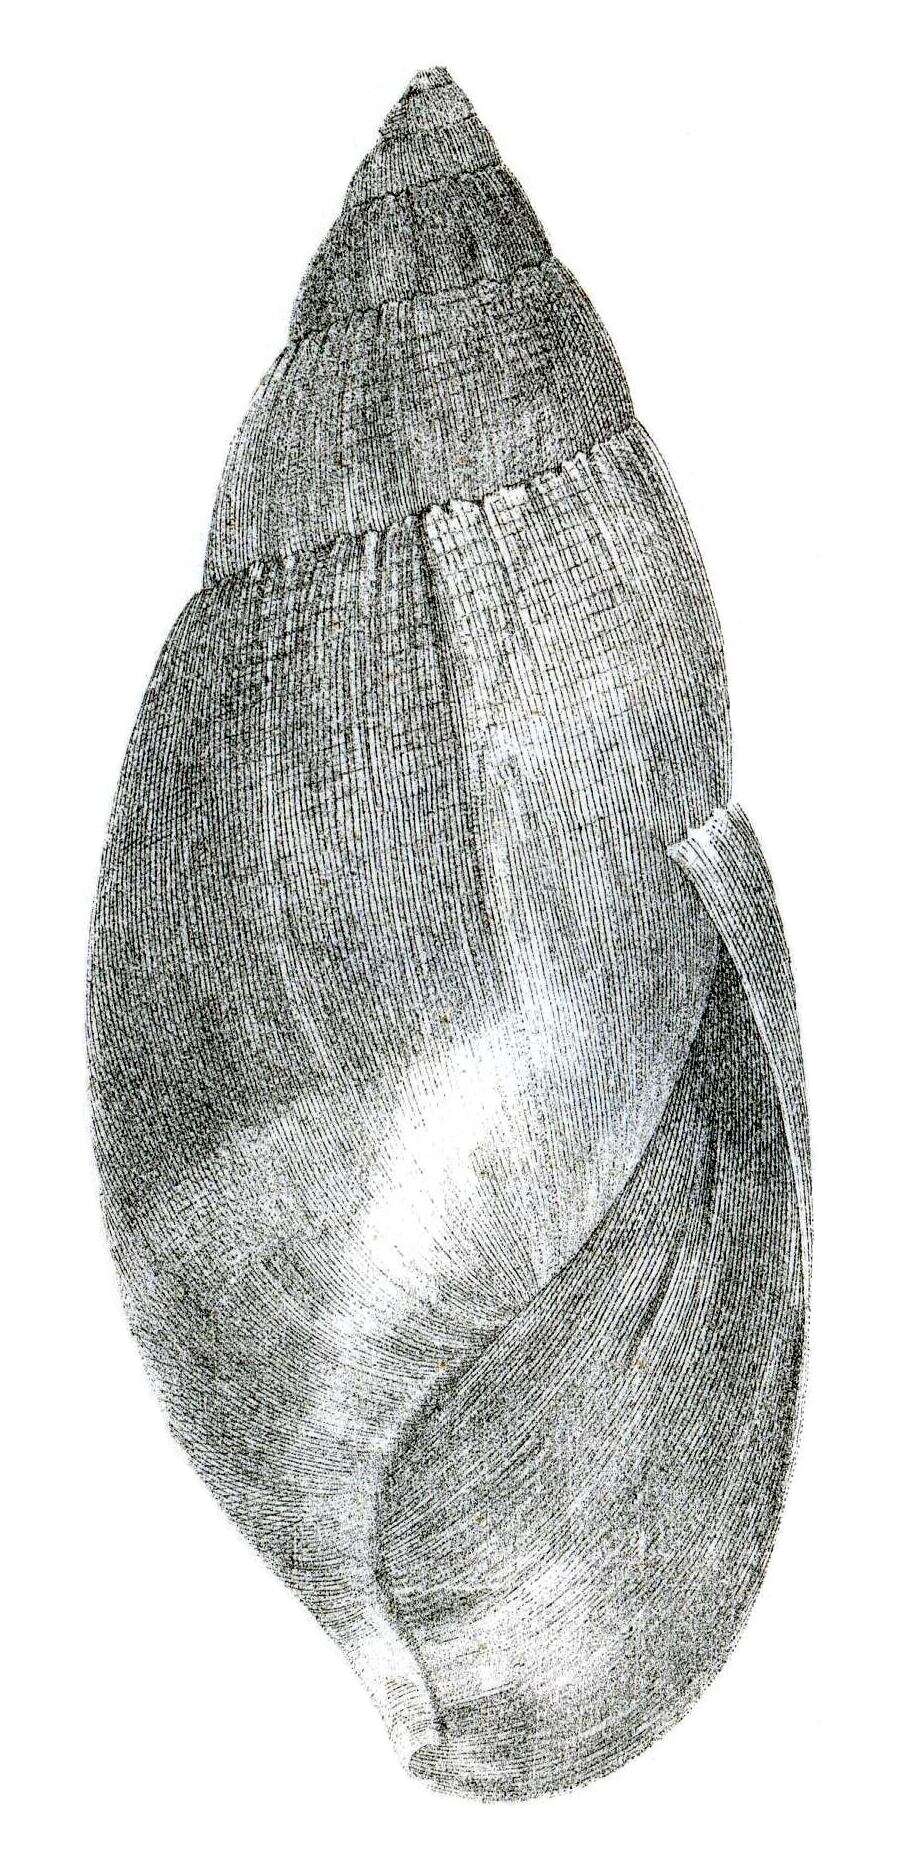 Image of Euglandina vanuxemensis (Lea 1834)